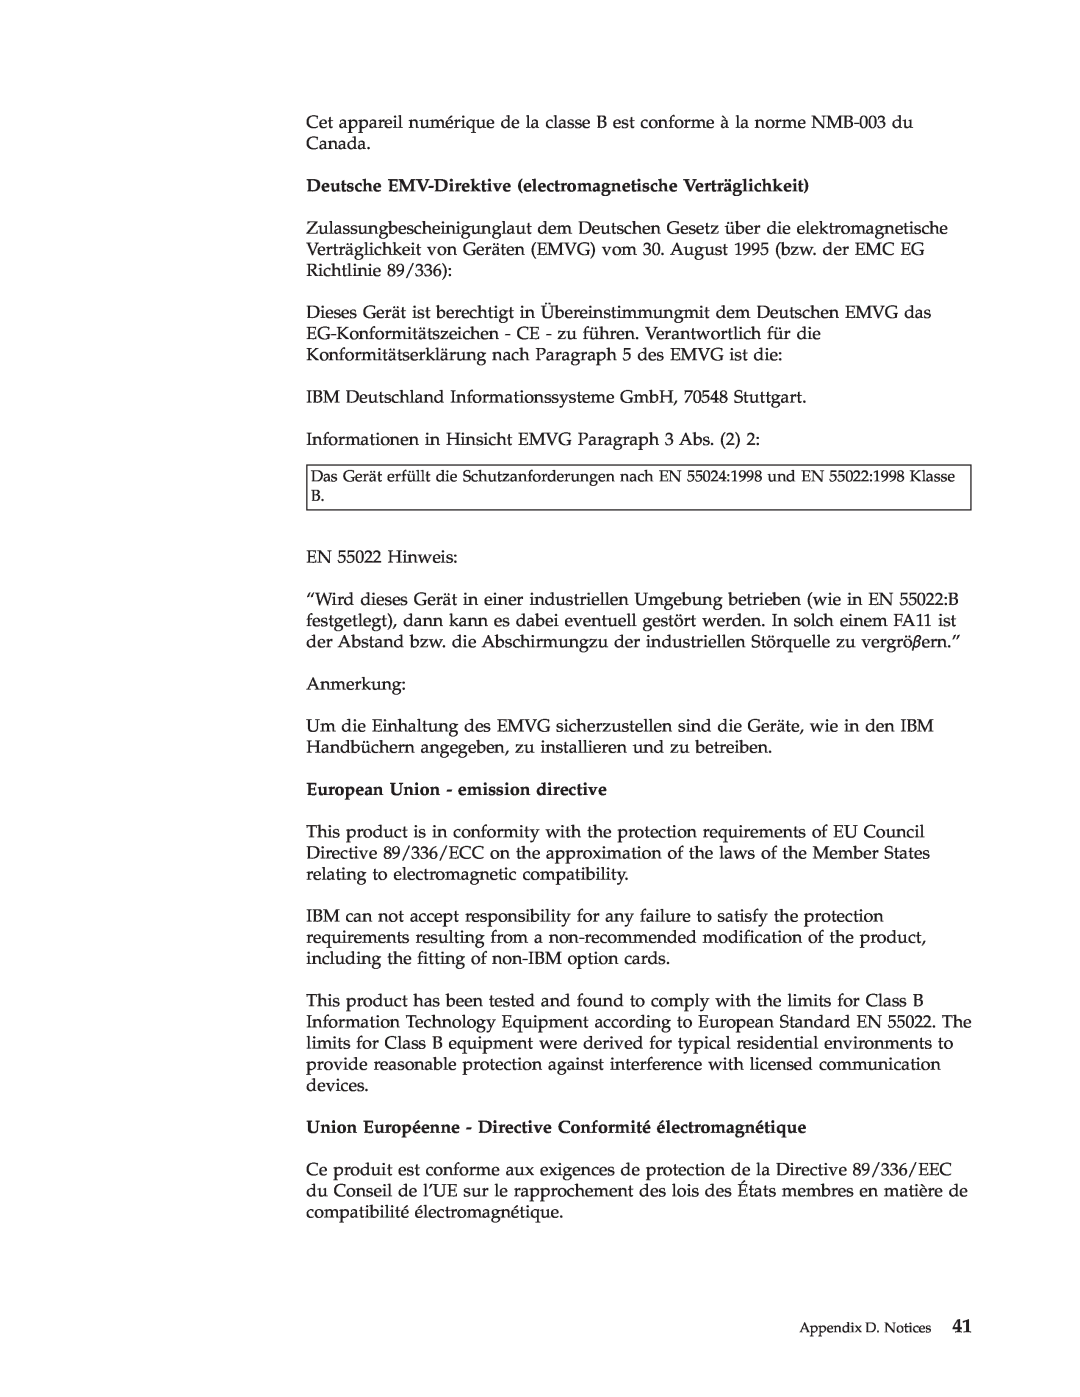 IBM 73P3279 manual Deutsche EMV-Direktive electromagnetische Verträglichkeit, European Union - emission directive 